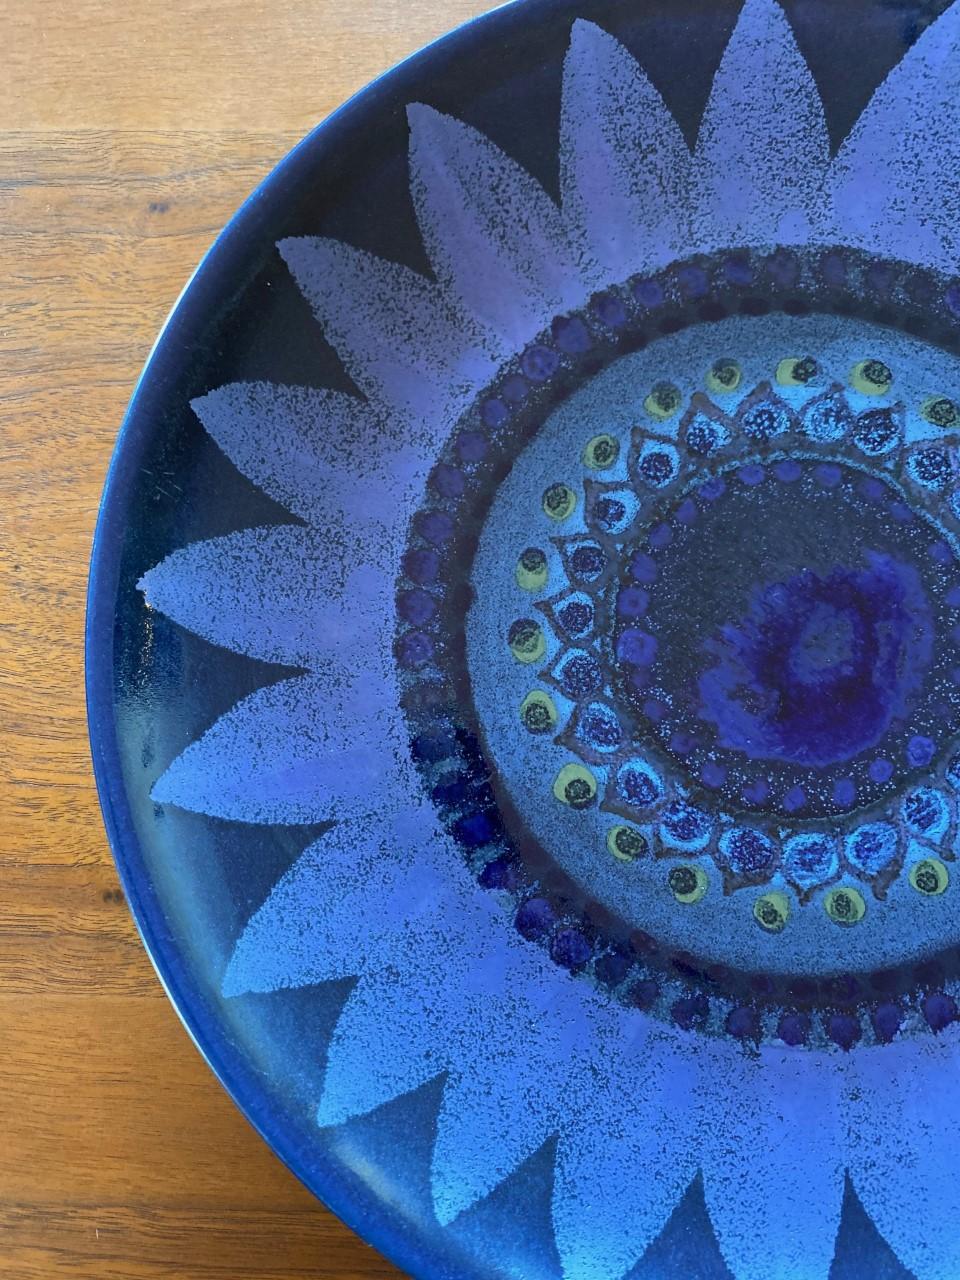 Schöner Vintage-Keramikteller in einem großen modernistischen Design von Hilkka-Liisa Ahola (1920-2009) für Arabia. Das Motiv ist floral mit einer Reihe von Schattierungen in Blau- und Indigoglasur. Unglaubliche Mid Century Signatur Ergänzung zu